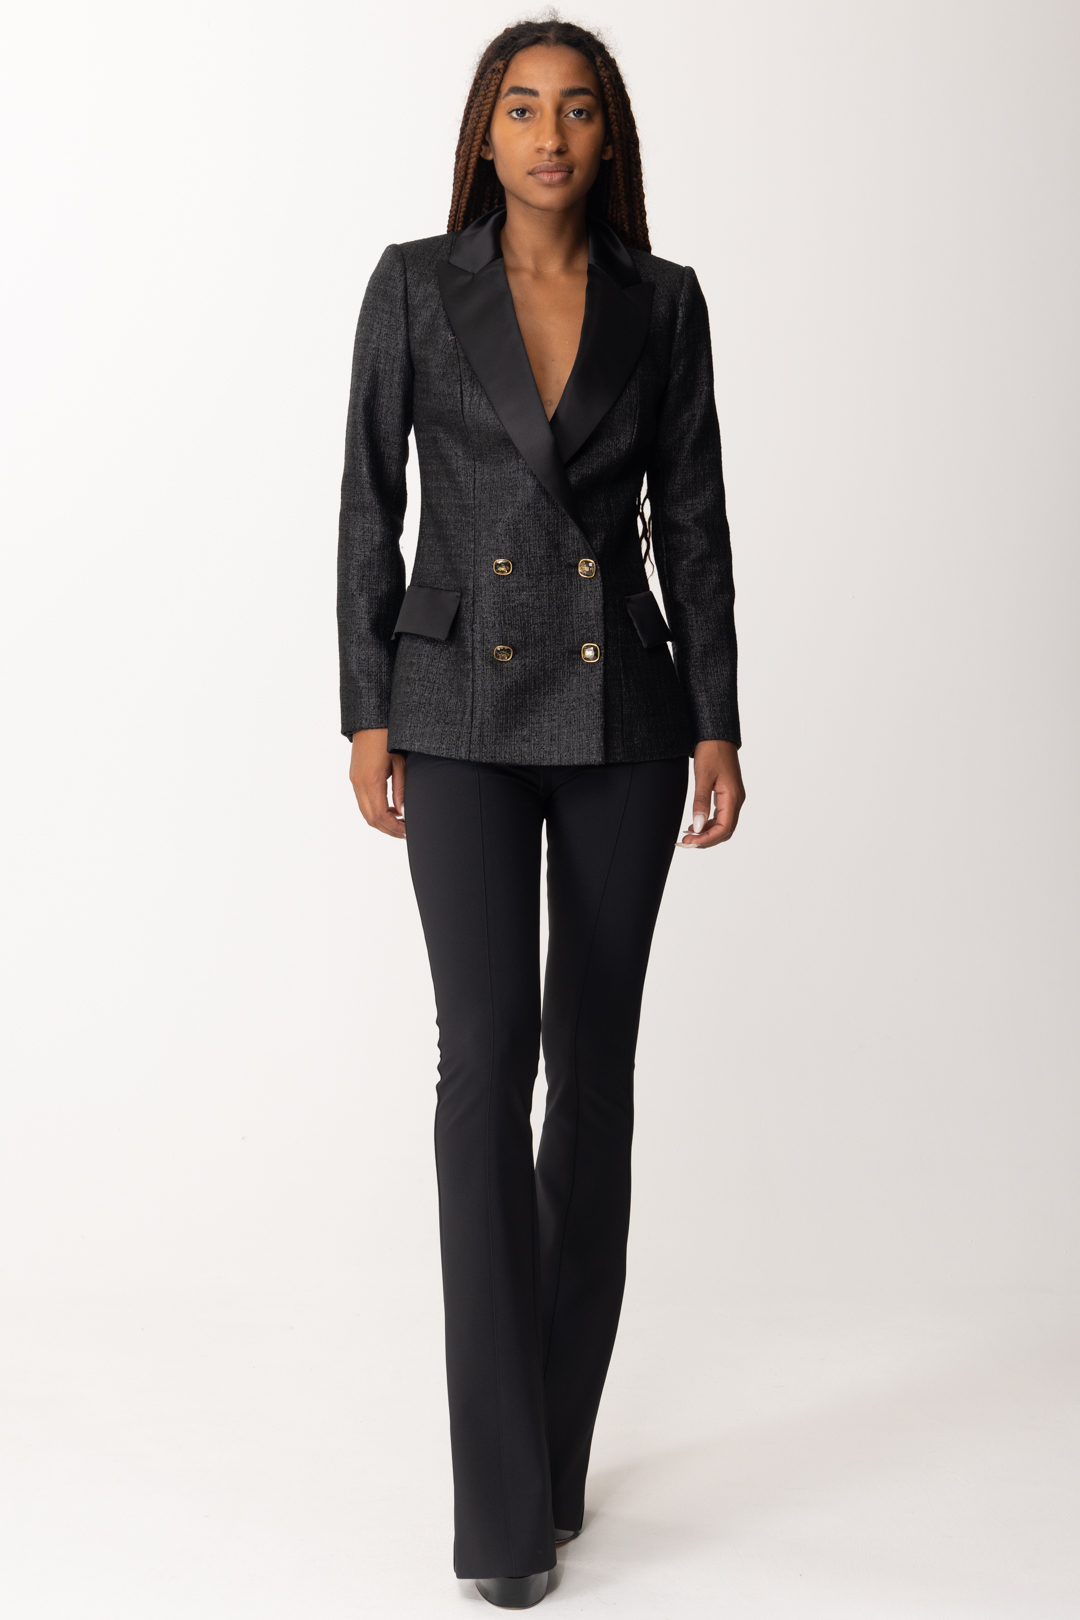 Vorschau: Elisabetta Franchi Zweireihige Jacke aus laminiertem Tweed Nero